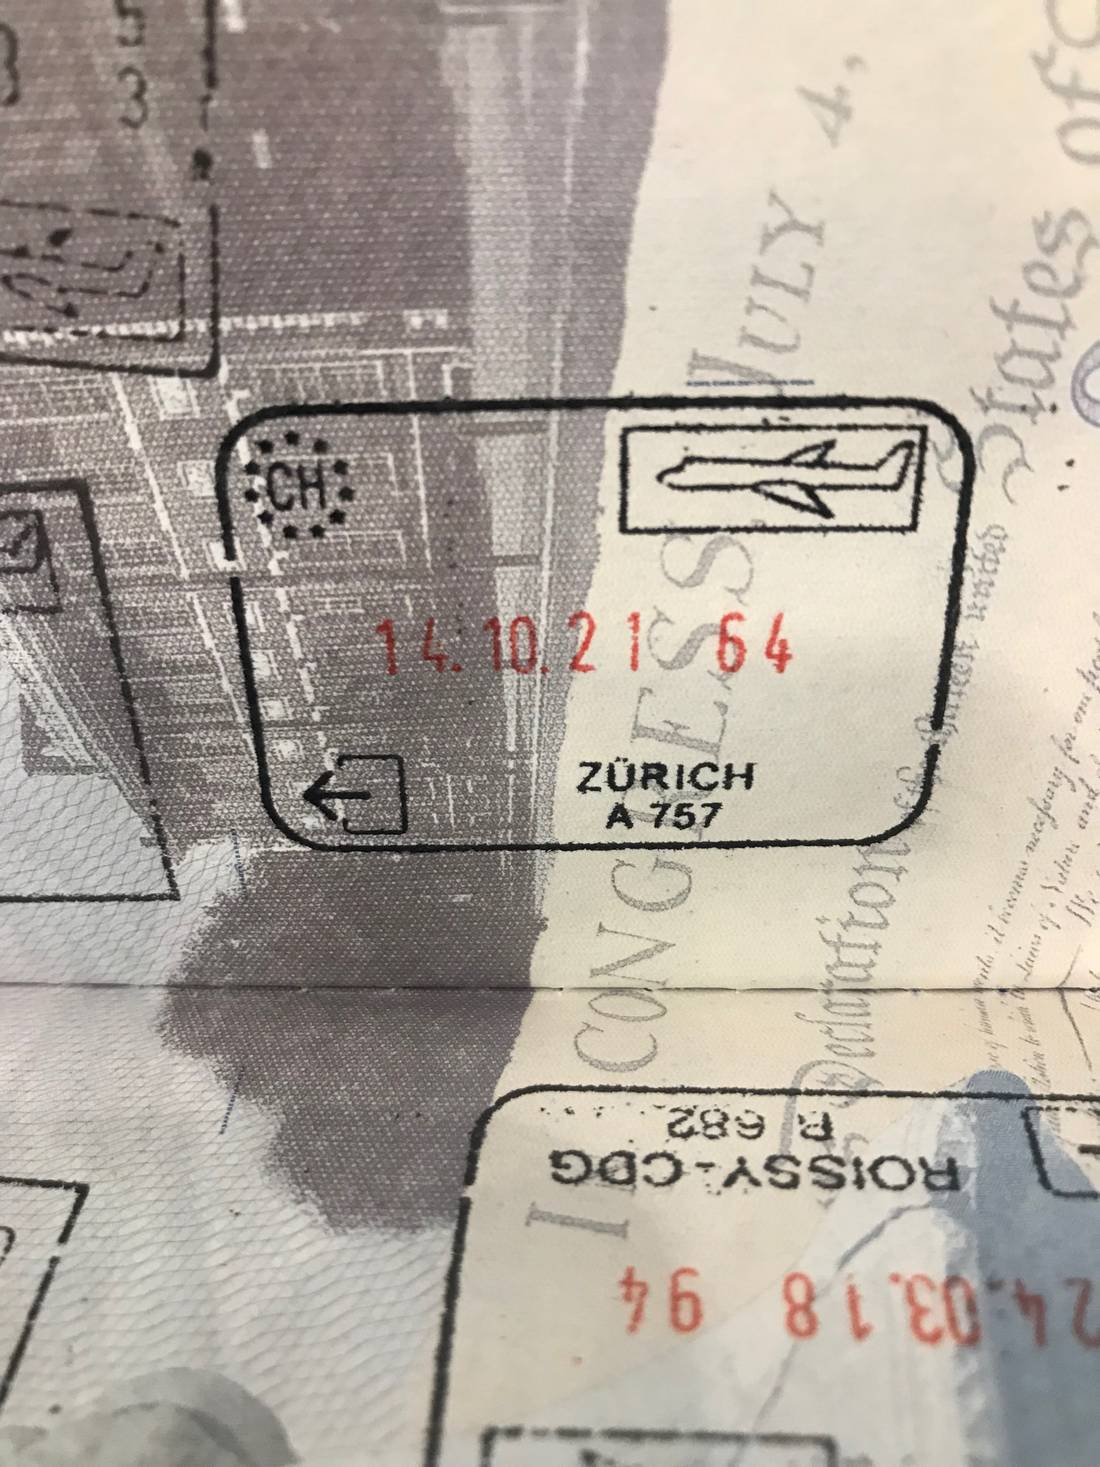 Zurich Passport Stamp